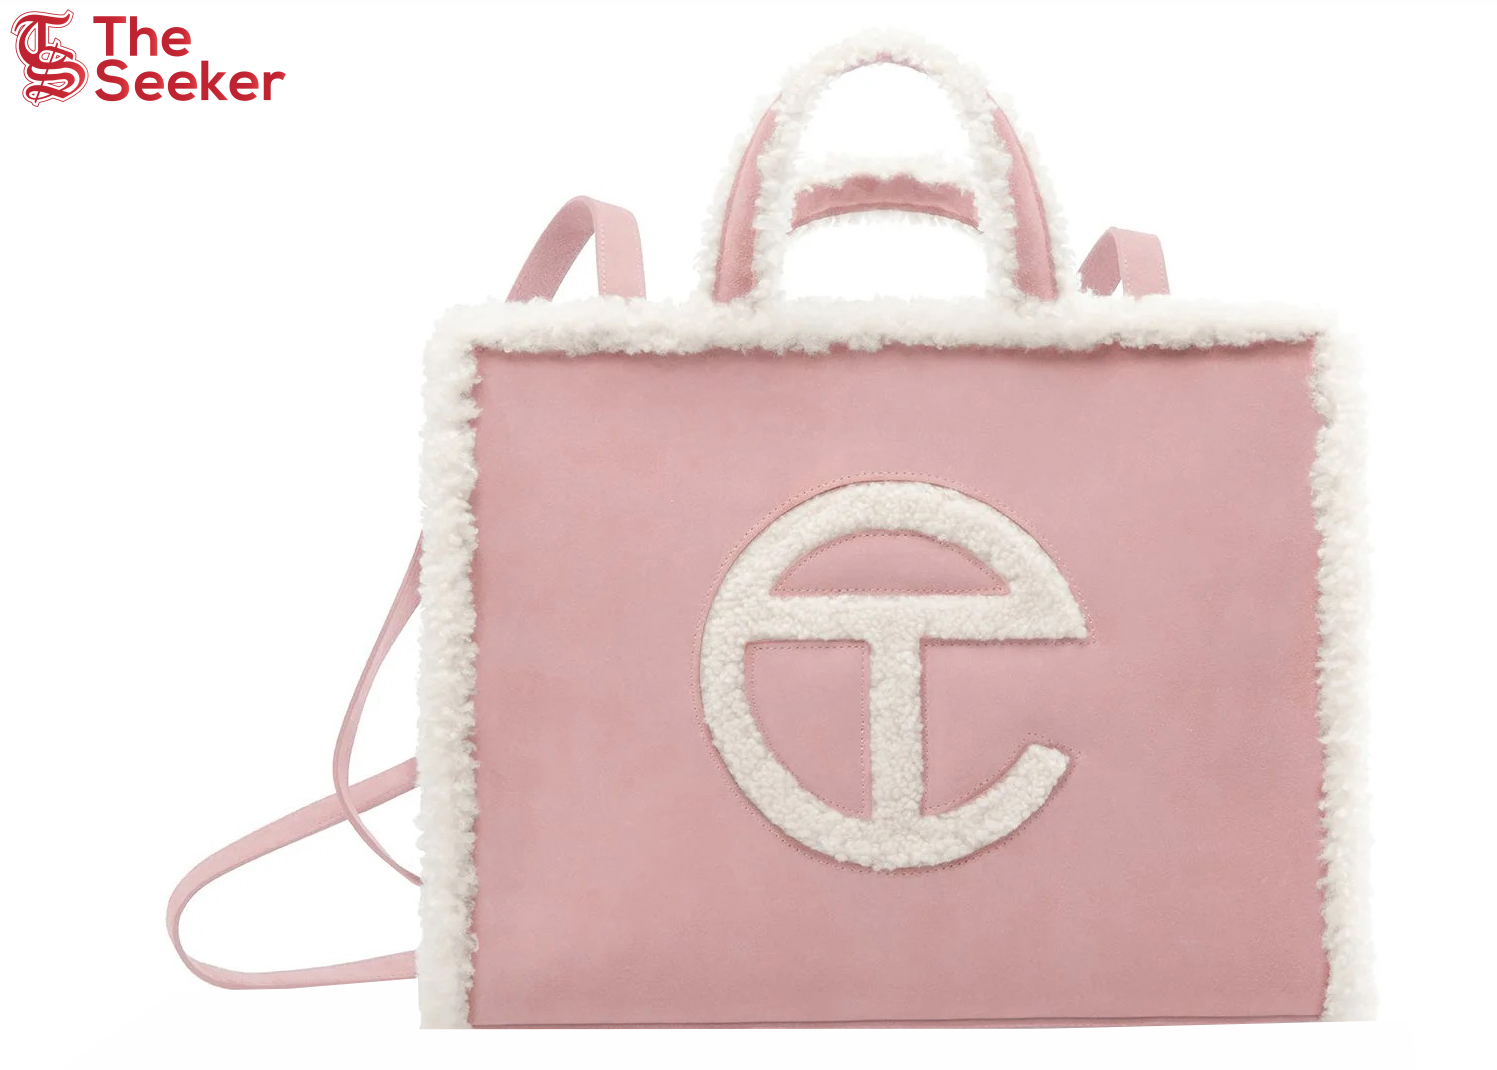 Telfar x UGG Shopping Bag Medium Pink